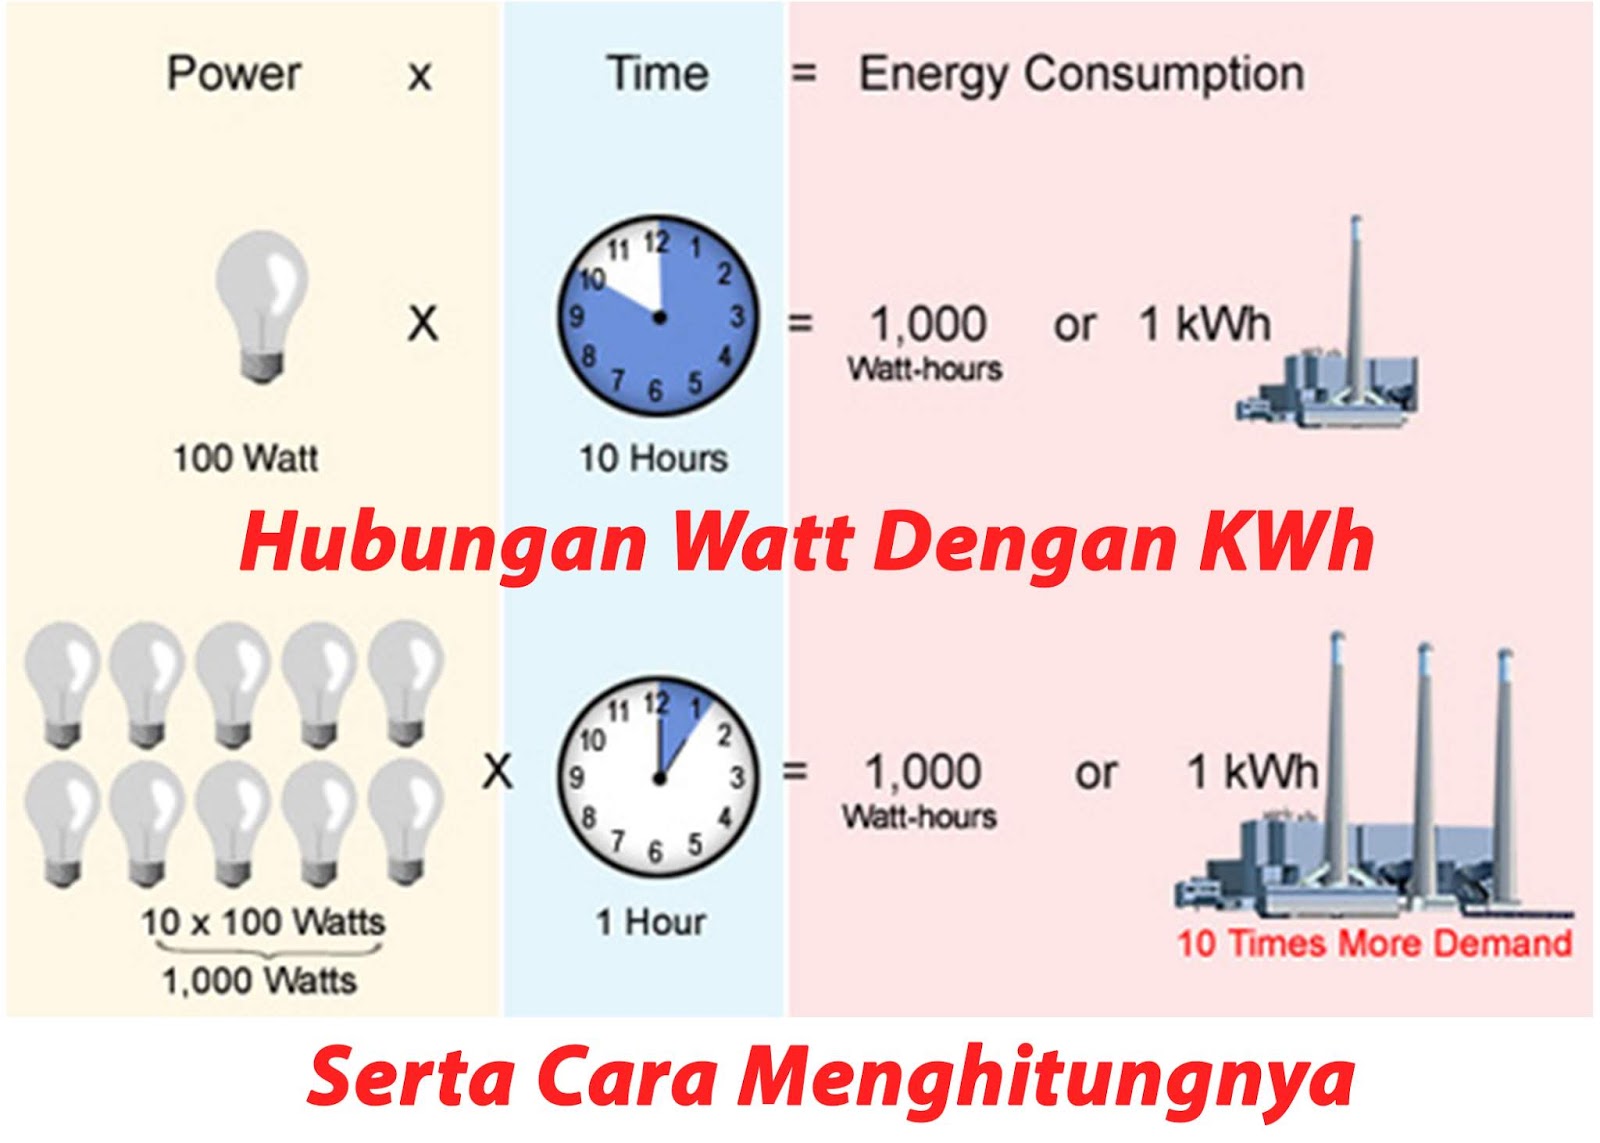 Hubungan Watt Dengan KWh, Serta Cara Menghitungnya